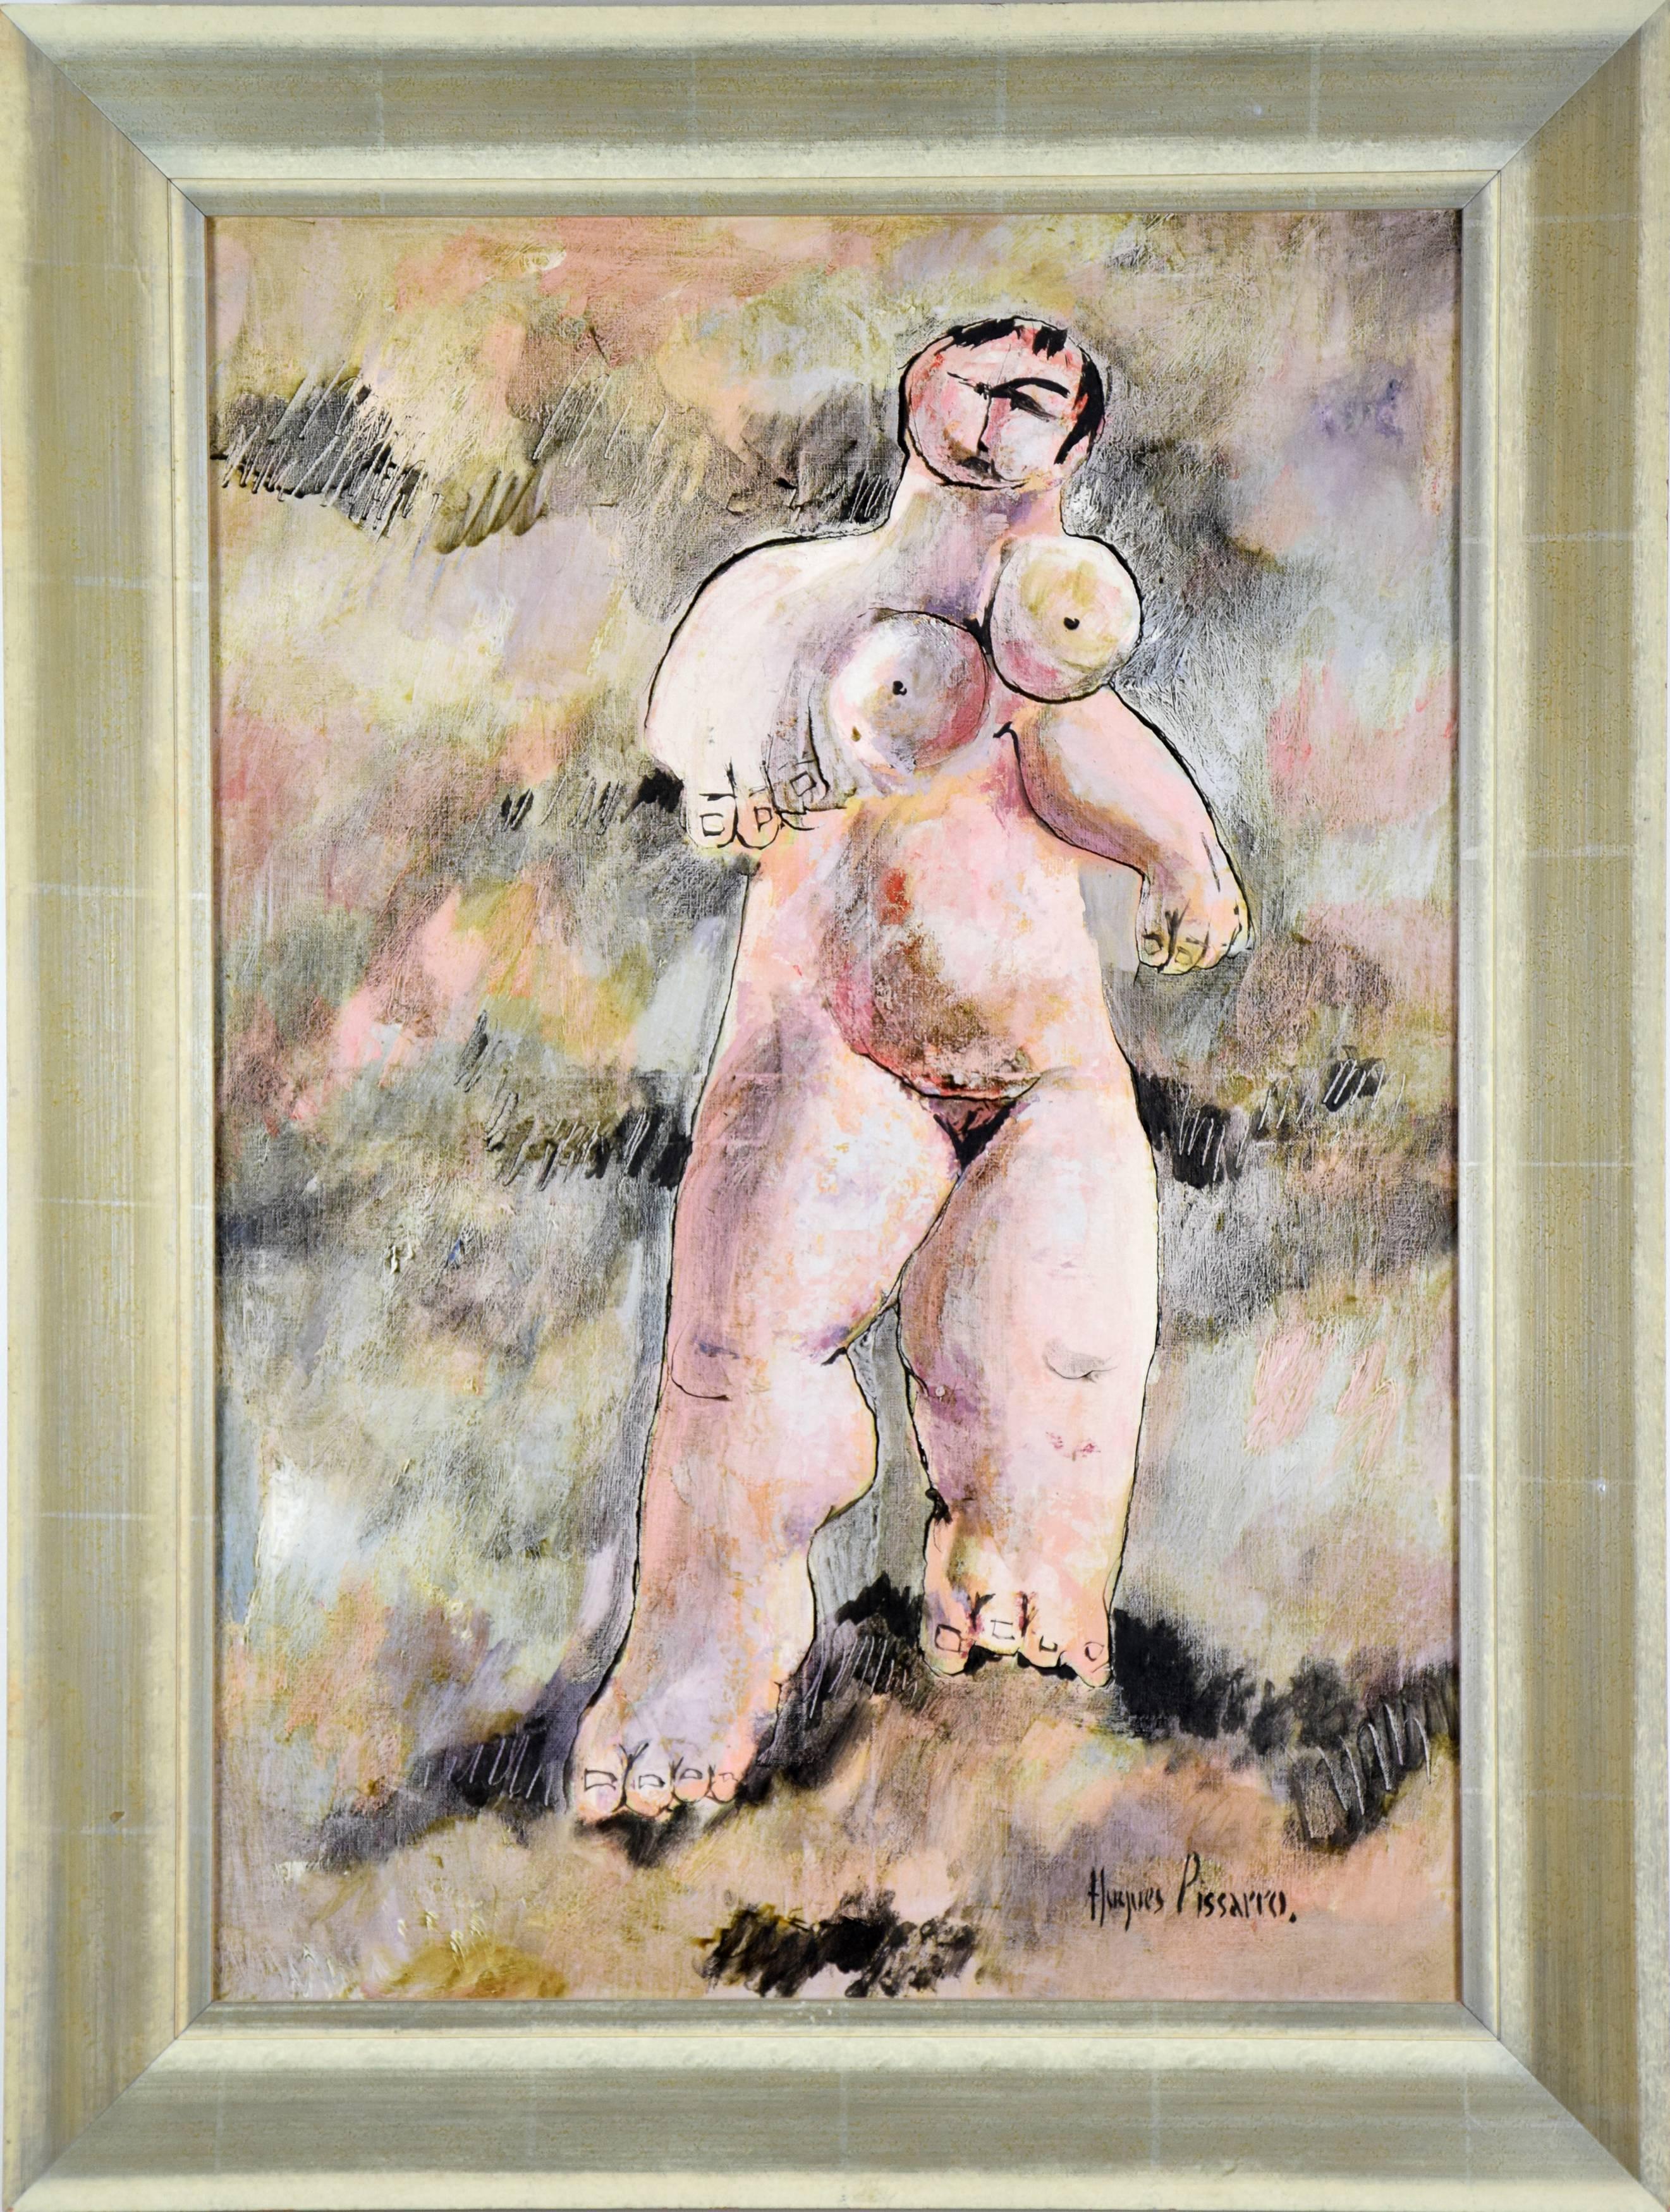 Nudefarbenes Gemälde, menschliche Figur, Öl auf Leinwand, Kunst von HUGUES PISSARRO – Painting von Hughes Claude Pissarro